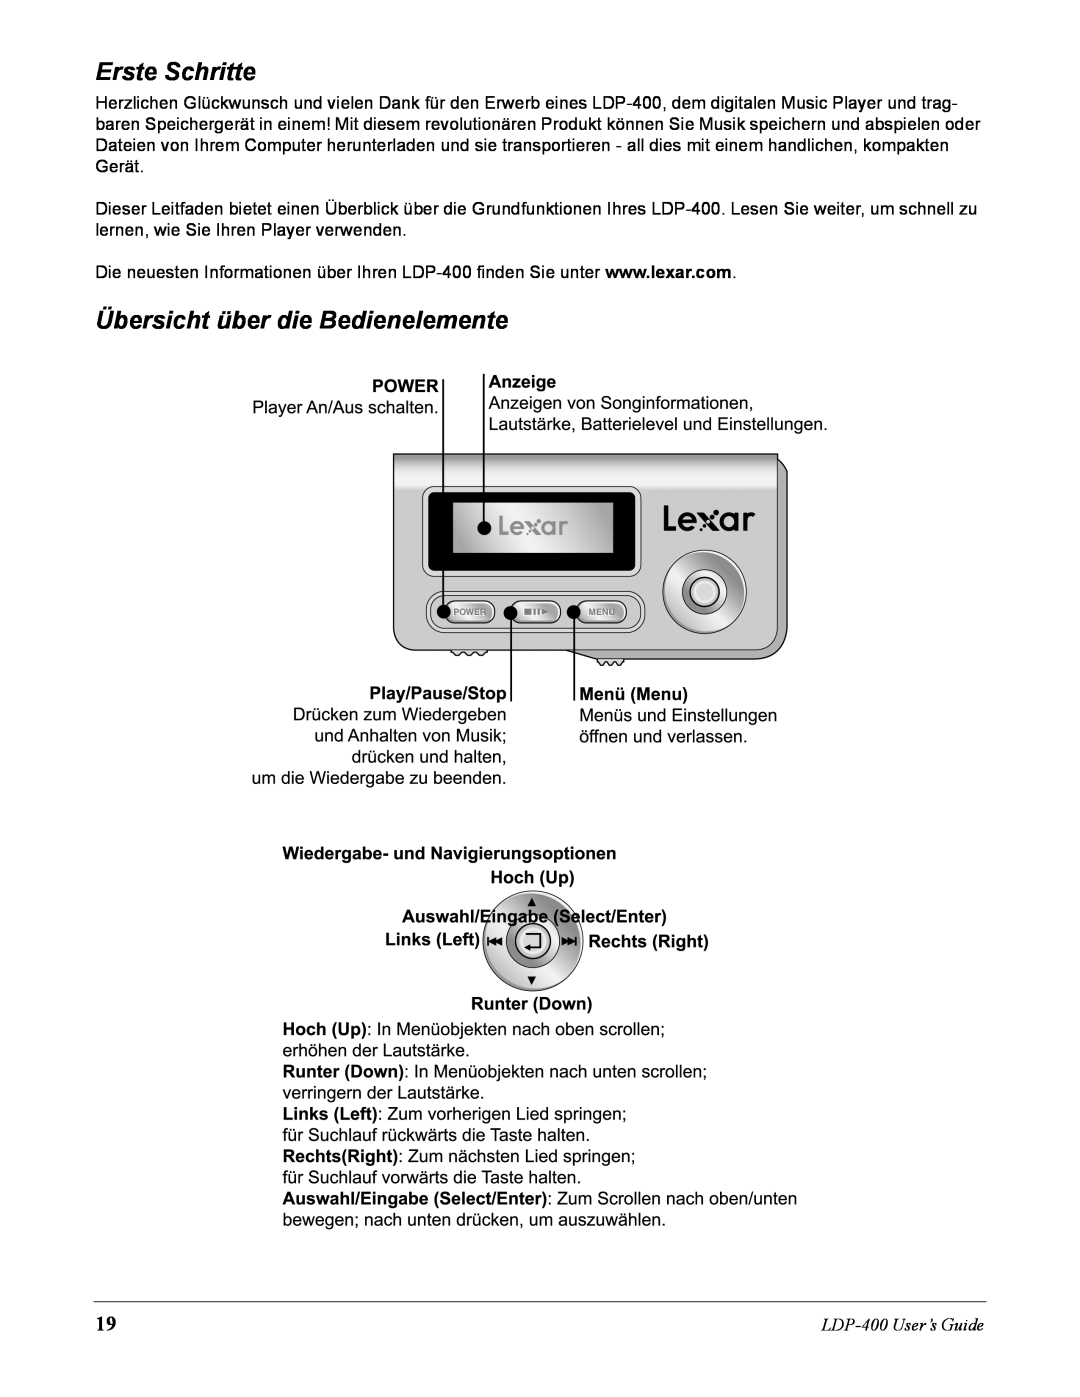 Lexar Media manual Erste Schritte, Übersicht über die Bedienelemente, LDP-400User’s Guide 